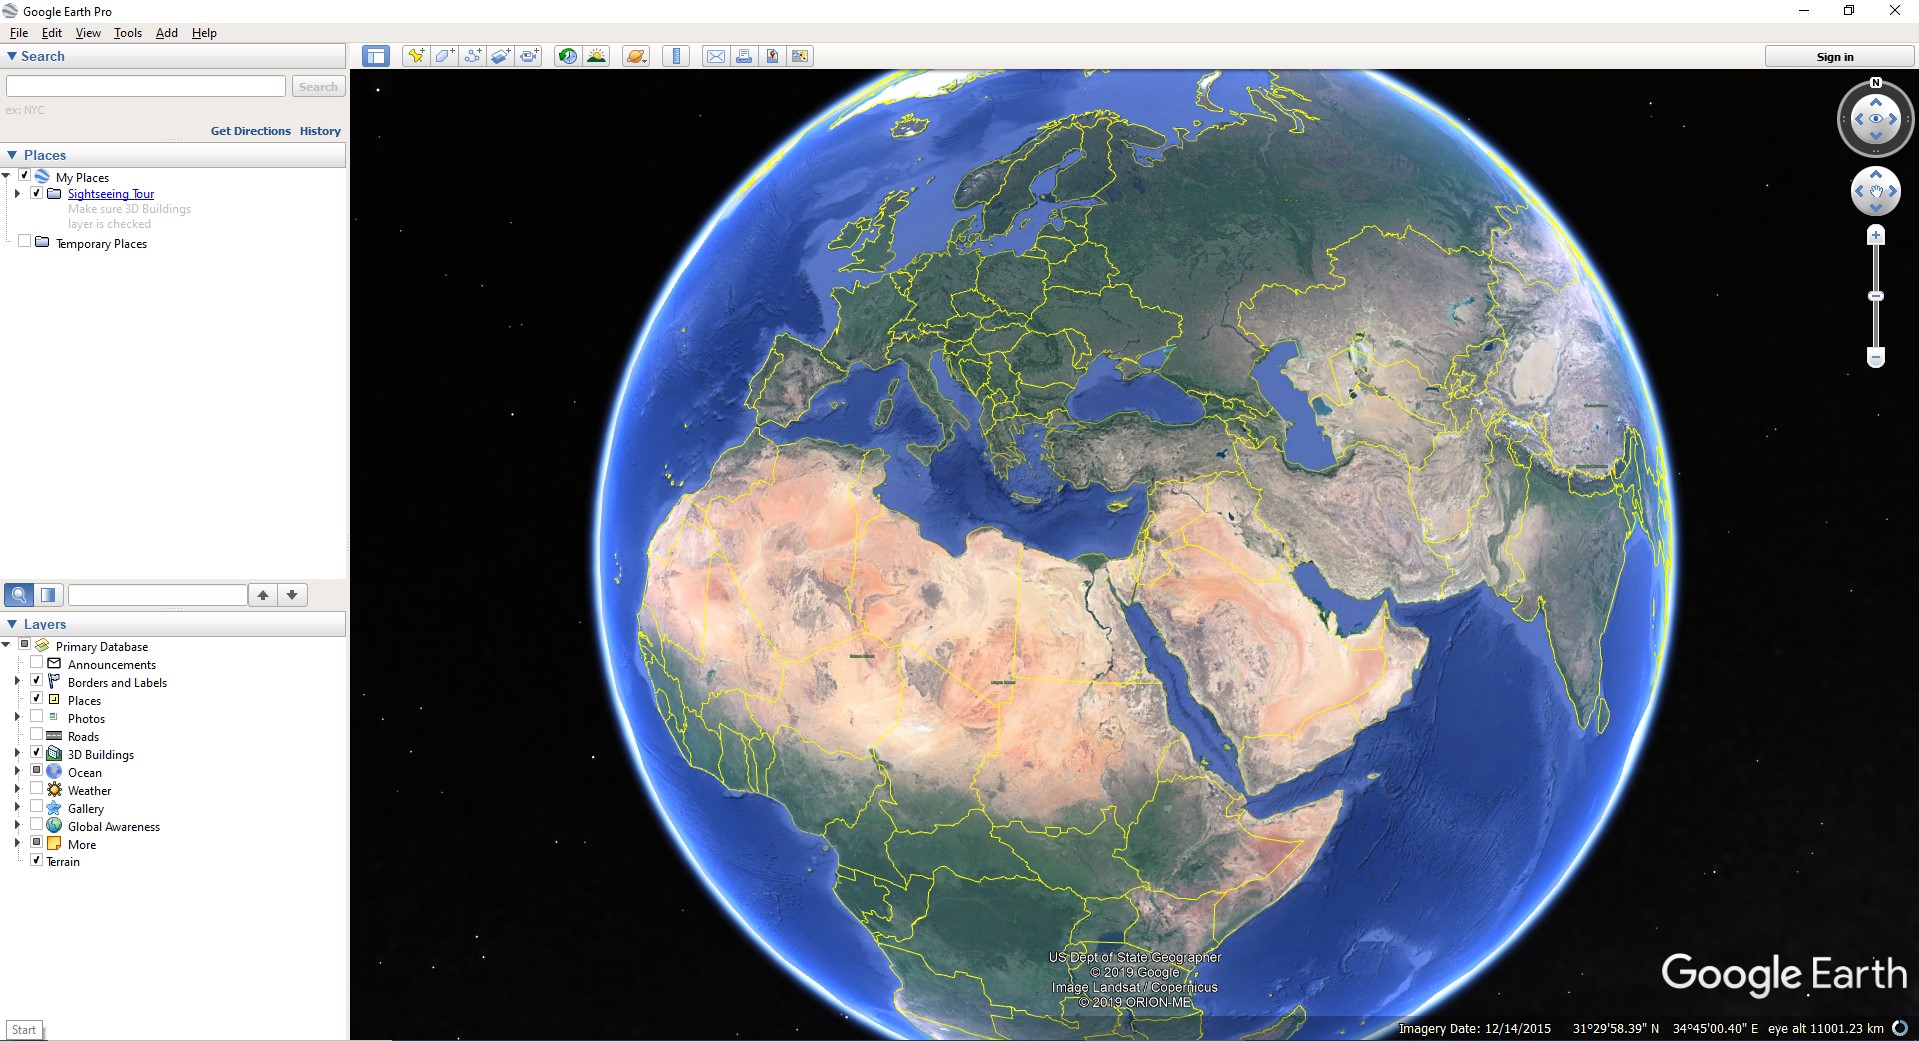 google earth pro desktop